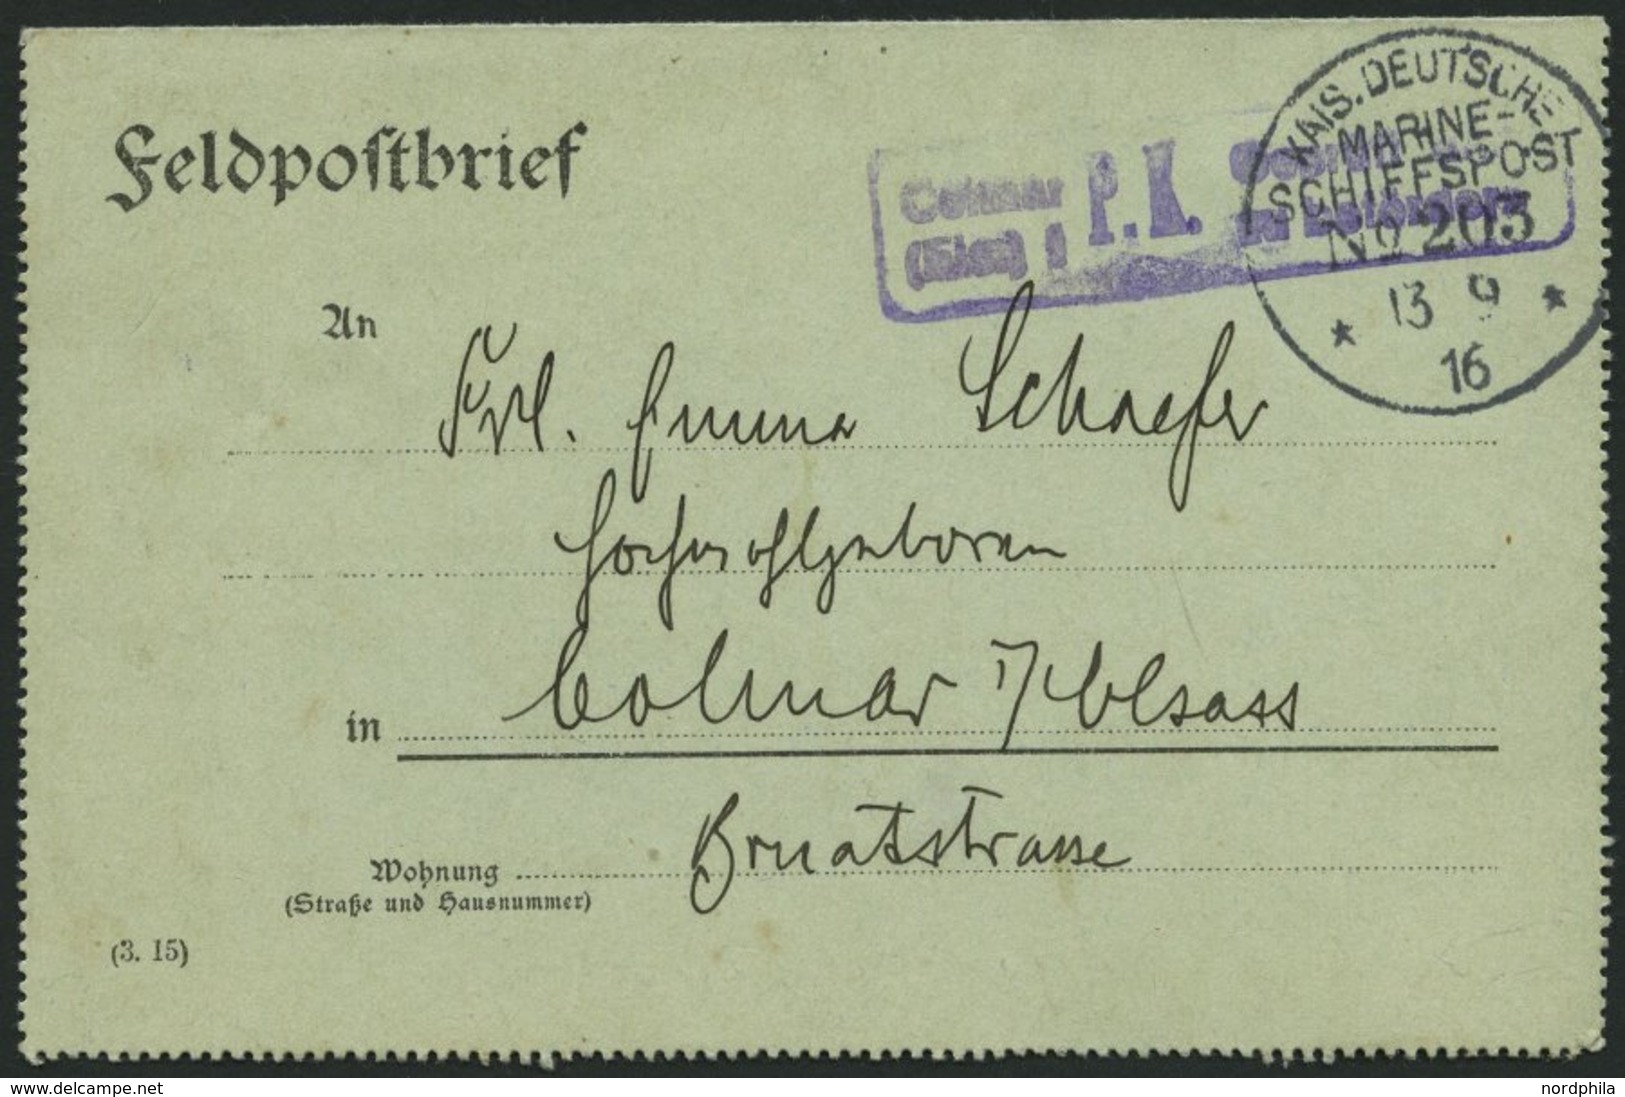 MSP VON 1914 - 1918 203 (Minenschiff PELIKAN), 13.9.1916, Feldpost-Kartenbrief Von Bord Der Pelikan Nach Colmar Mit Viol - Schiffahrt